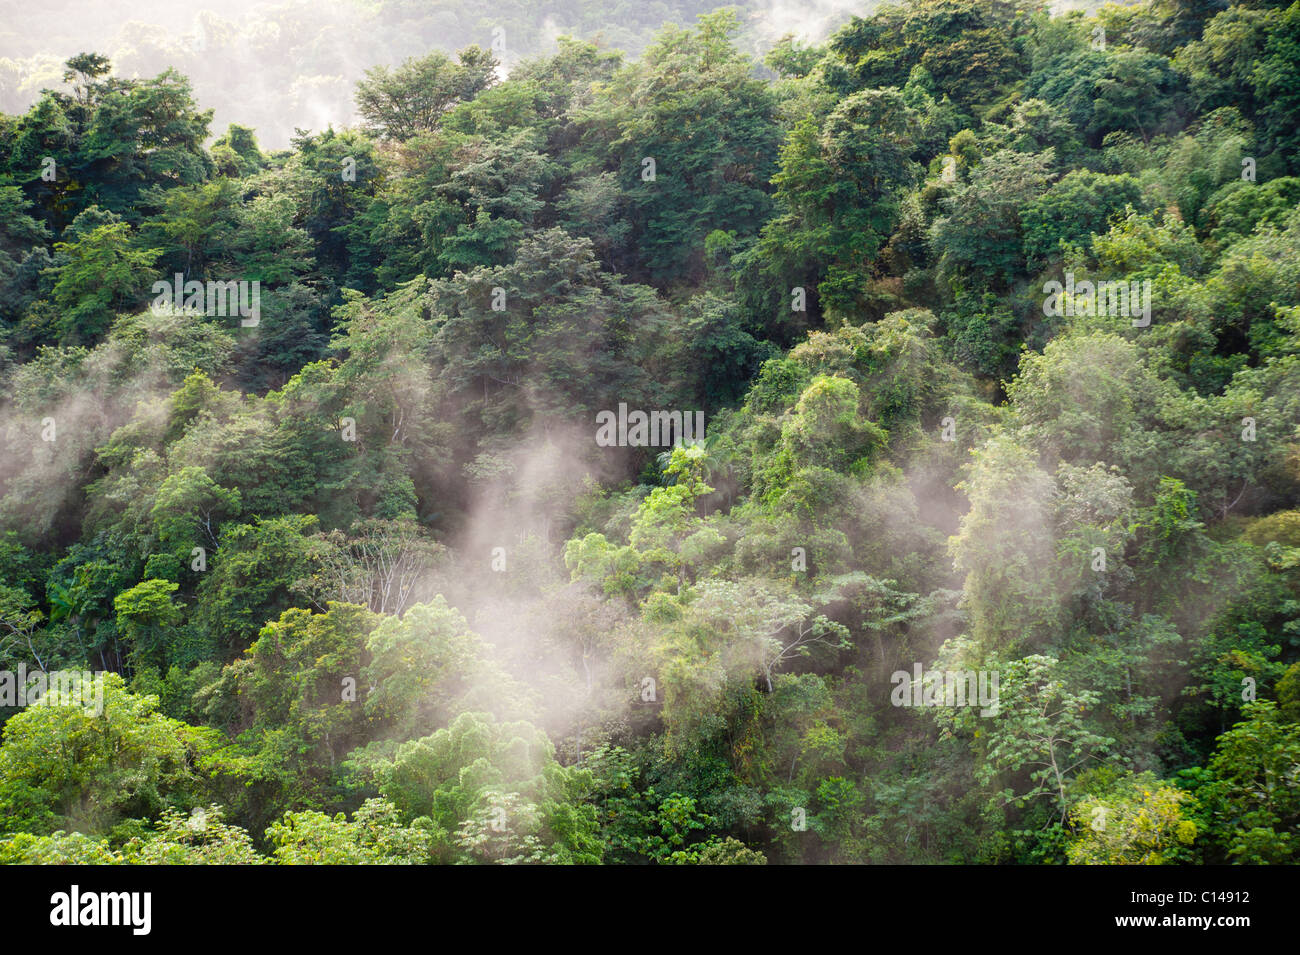 Amazon rainforest, jungle, mist, tree tops, Stock Photo